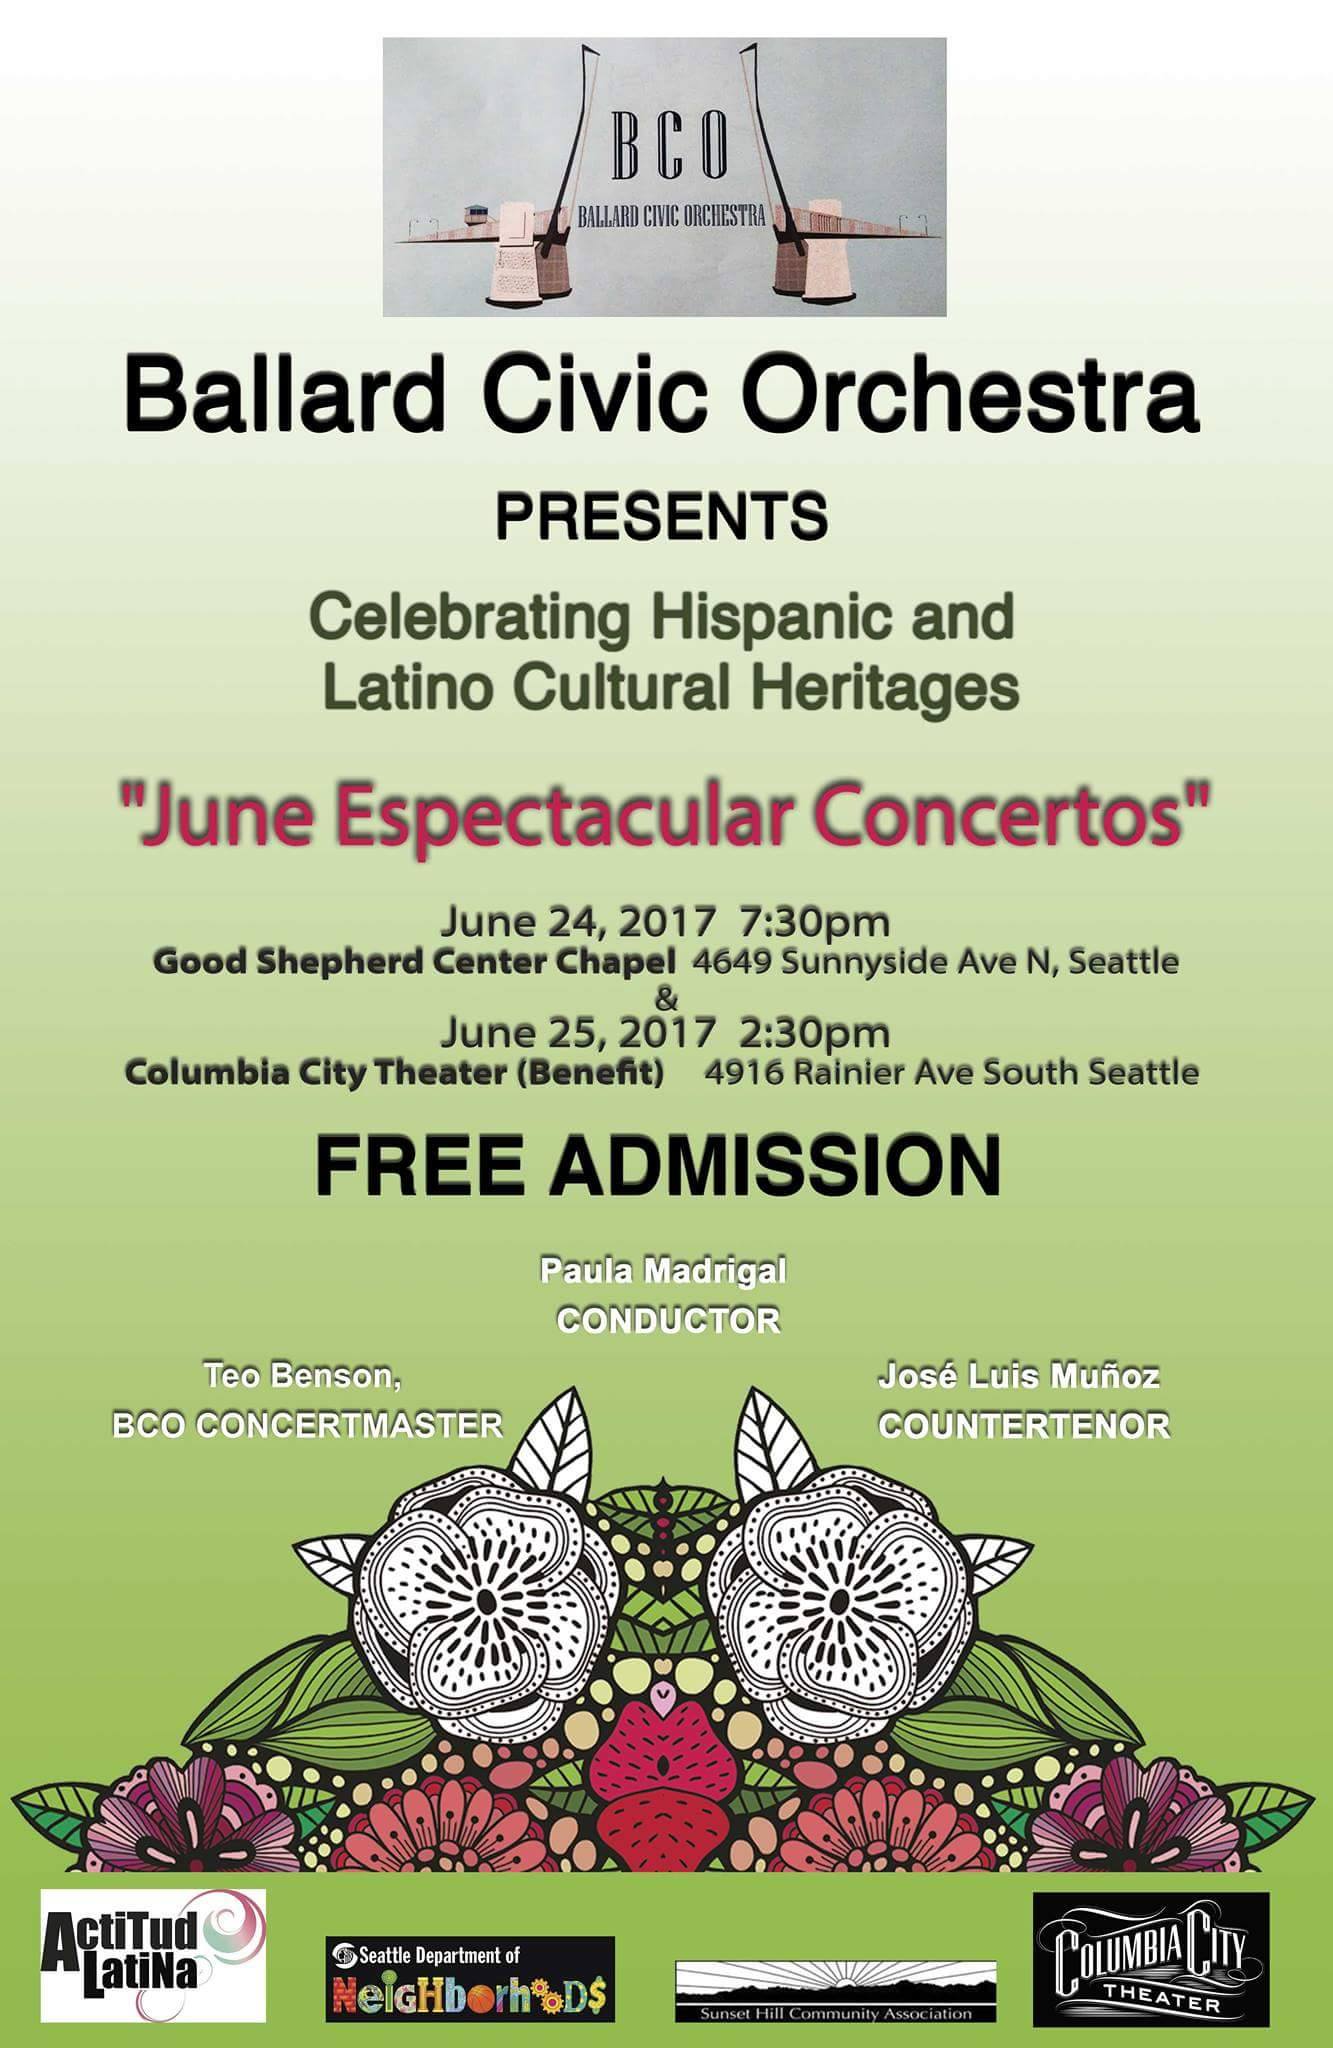 Concierto Civic Ballard en Junio 2017